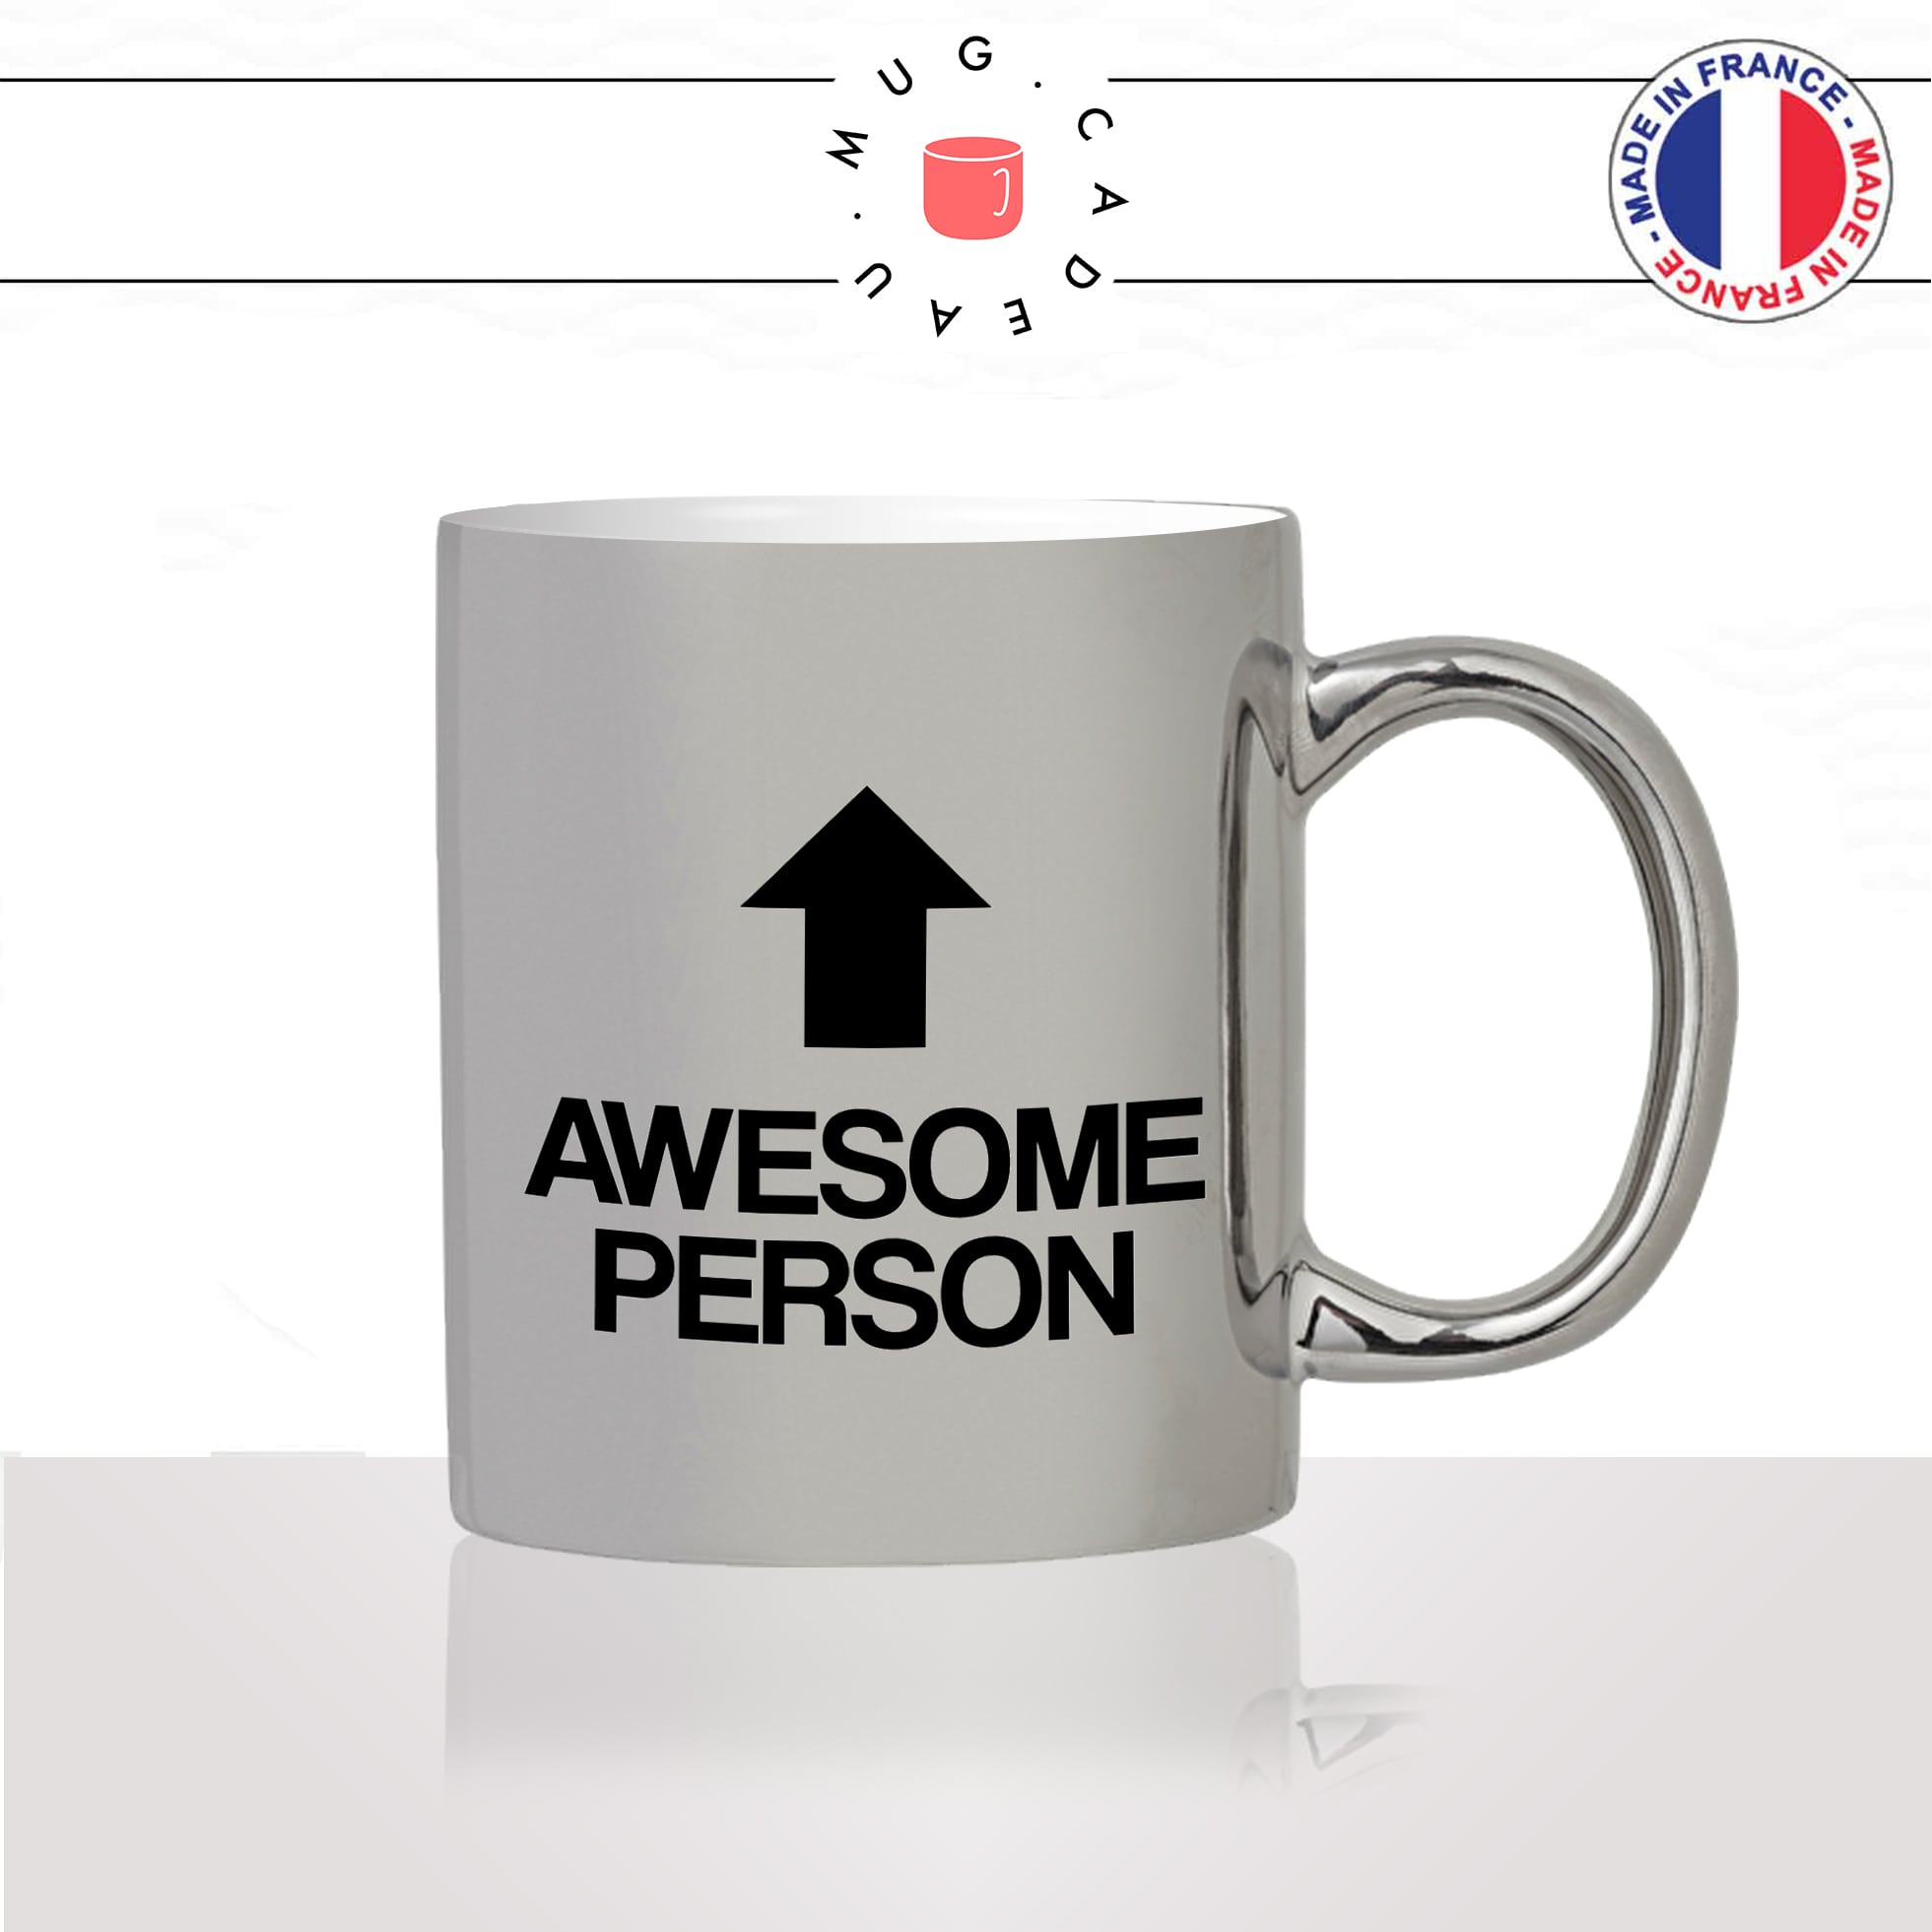 mug-tasse-argent-argenté-silver-awesome-person-femme-homme-copine-collegue-decoration-humour-idée-cadeau-fun-cool-café-thé-original2-min